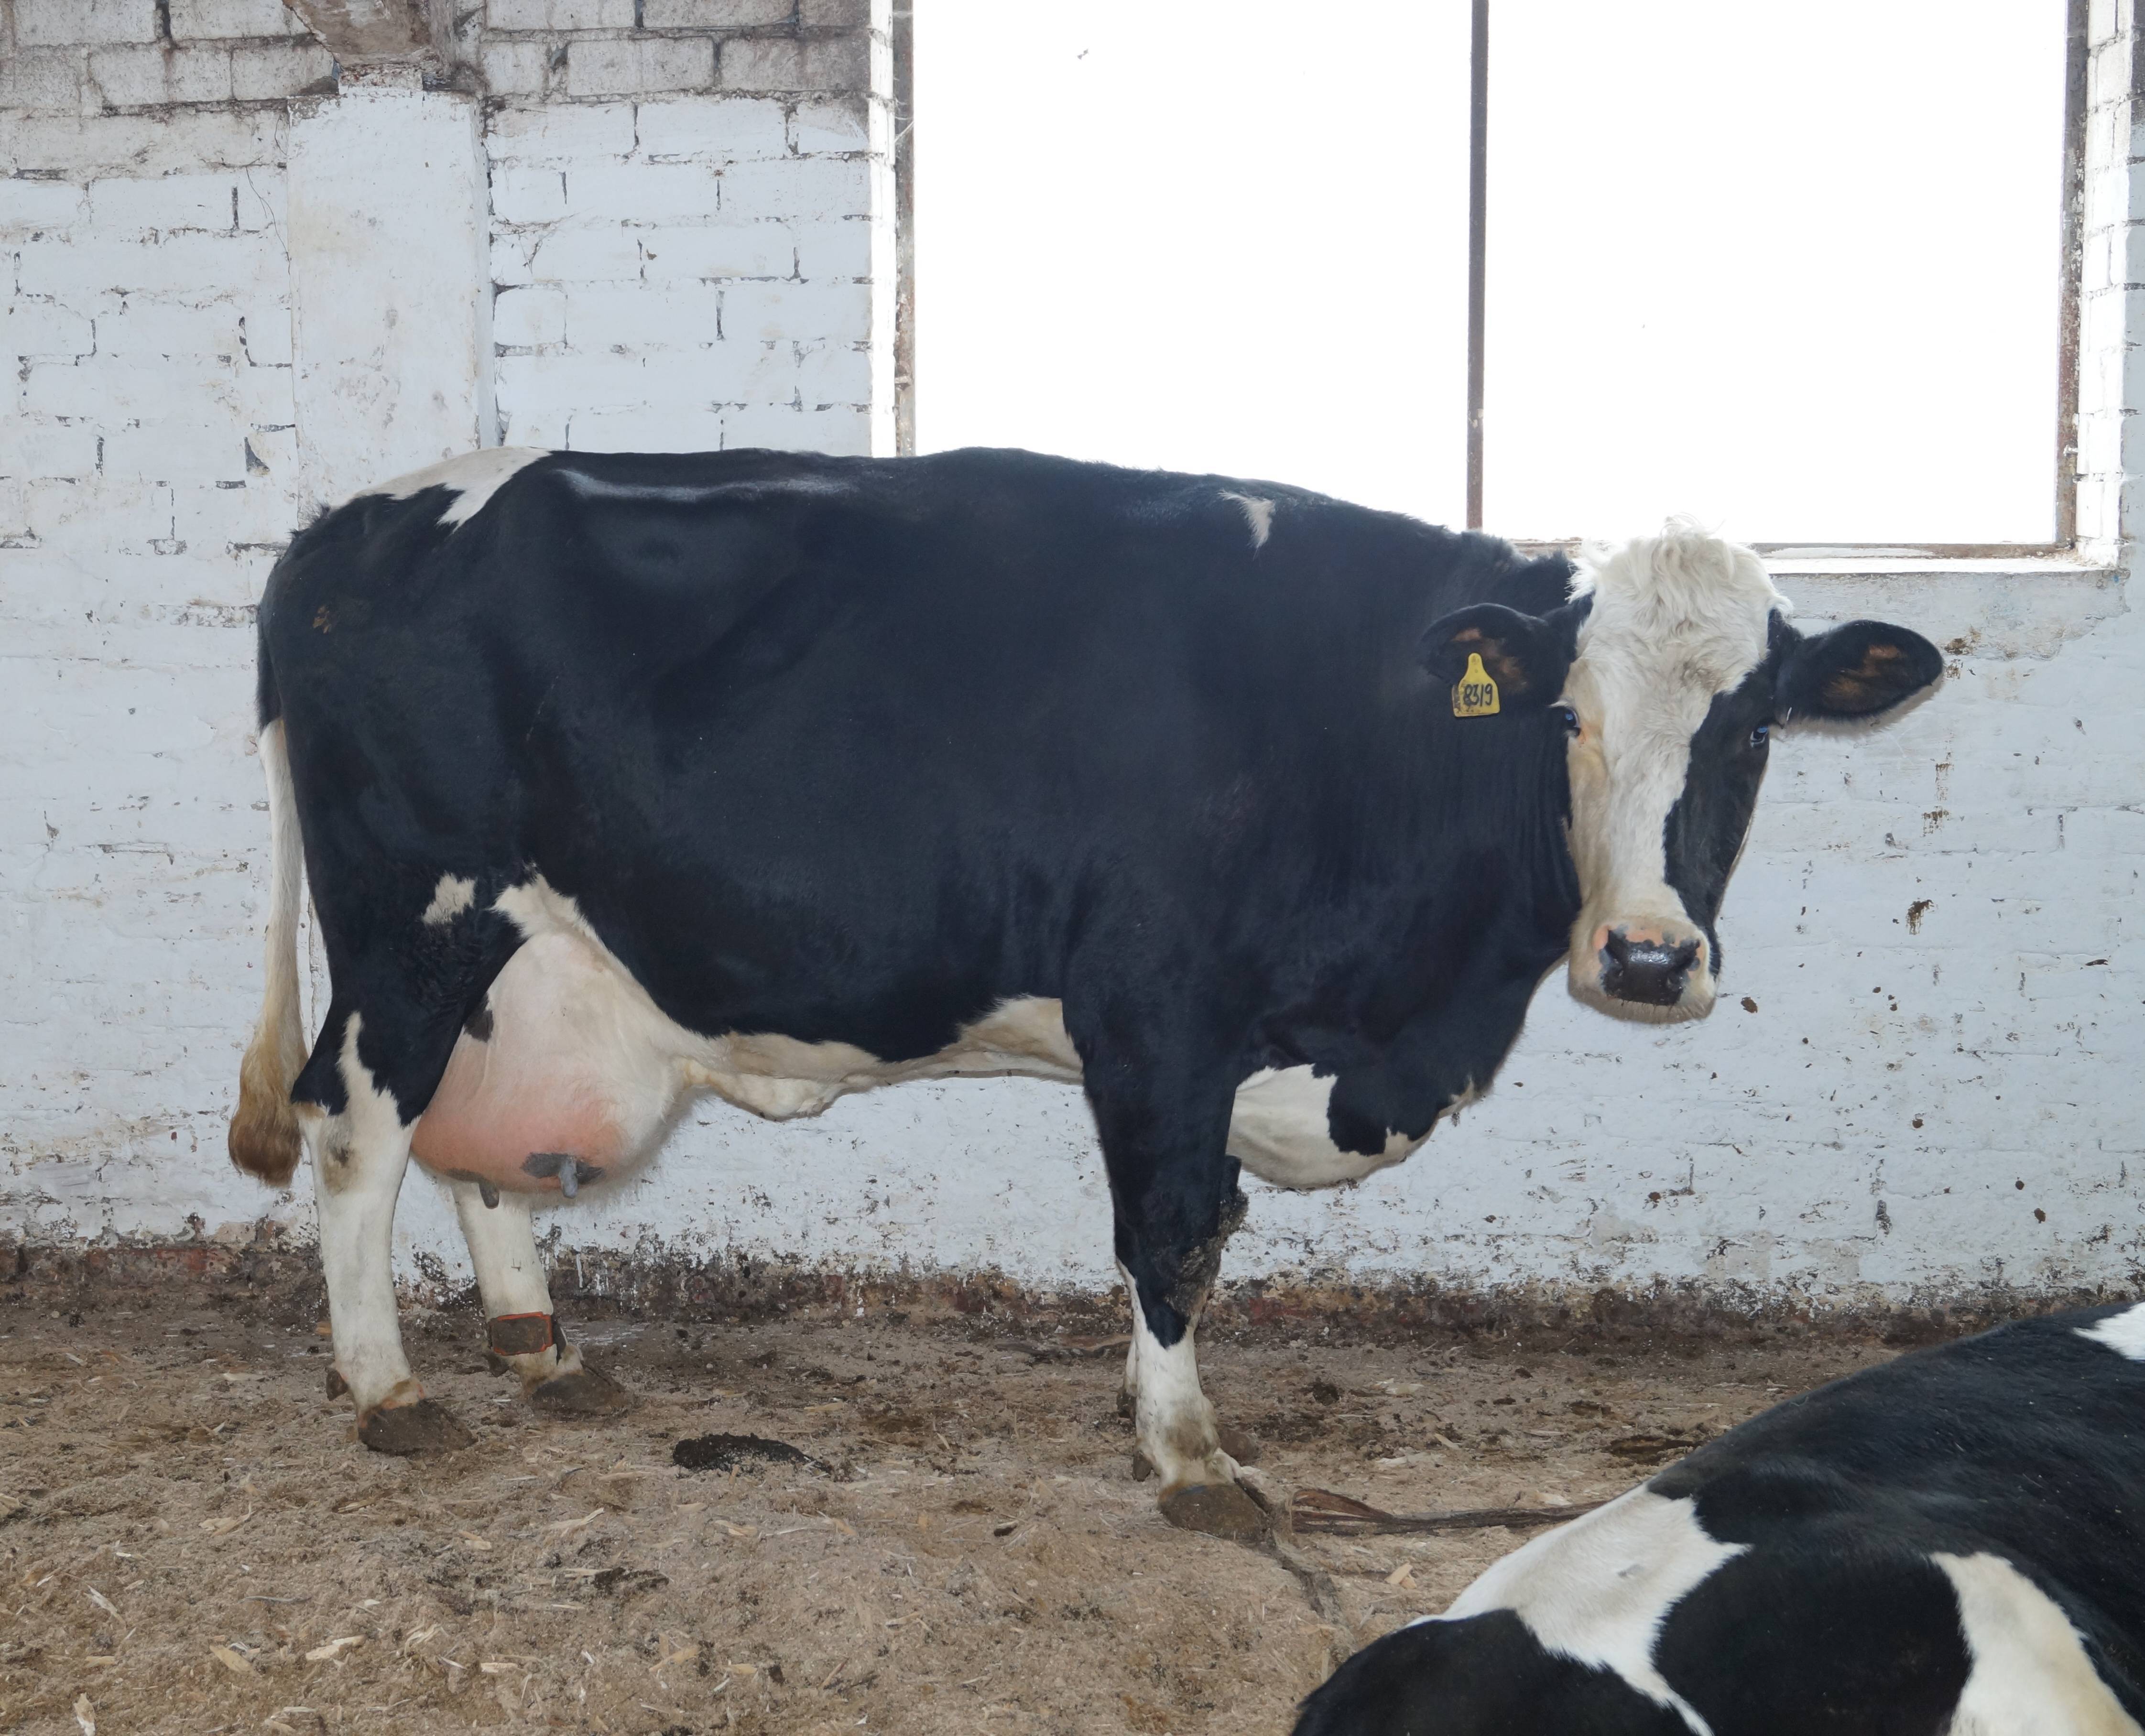 Черно-пестрые коровы - разведение и характеристика породы крс 2020